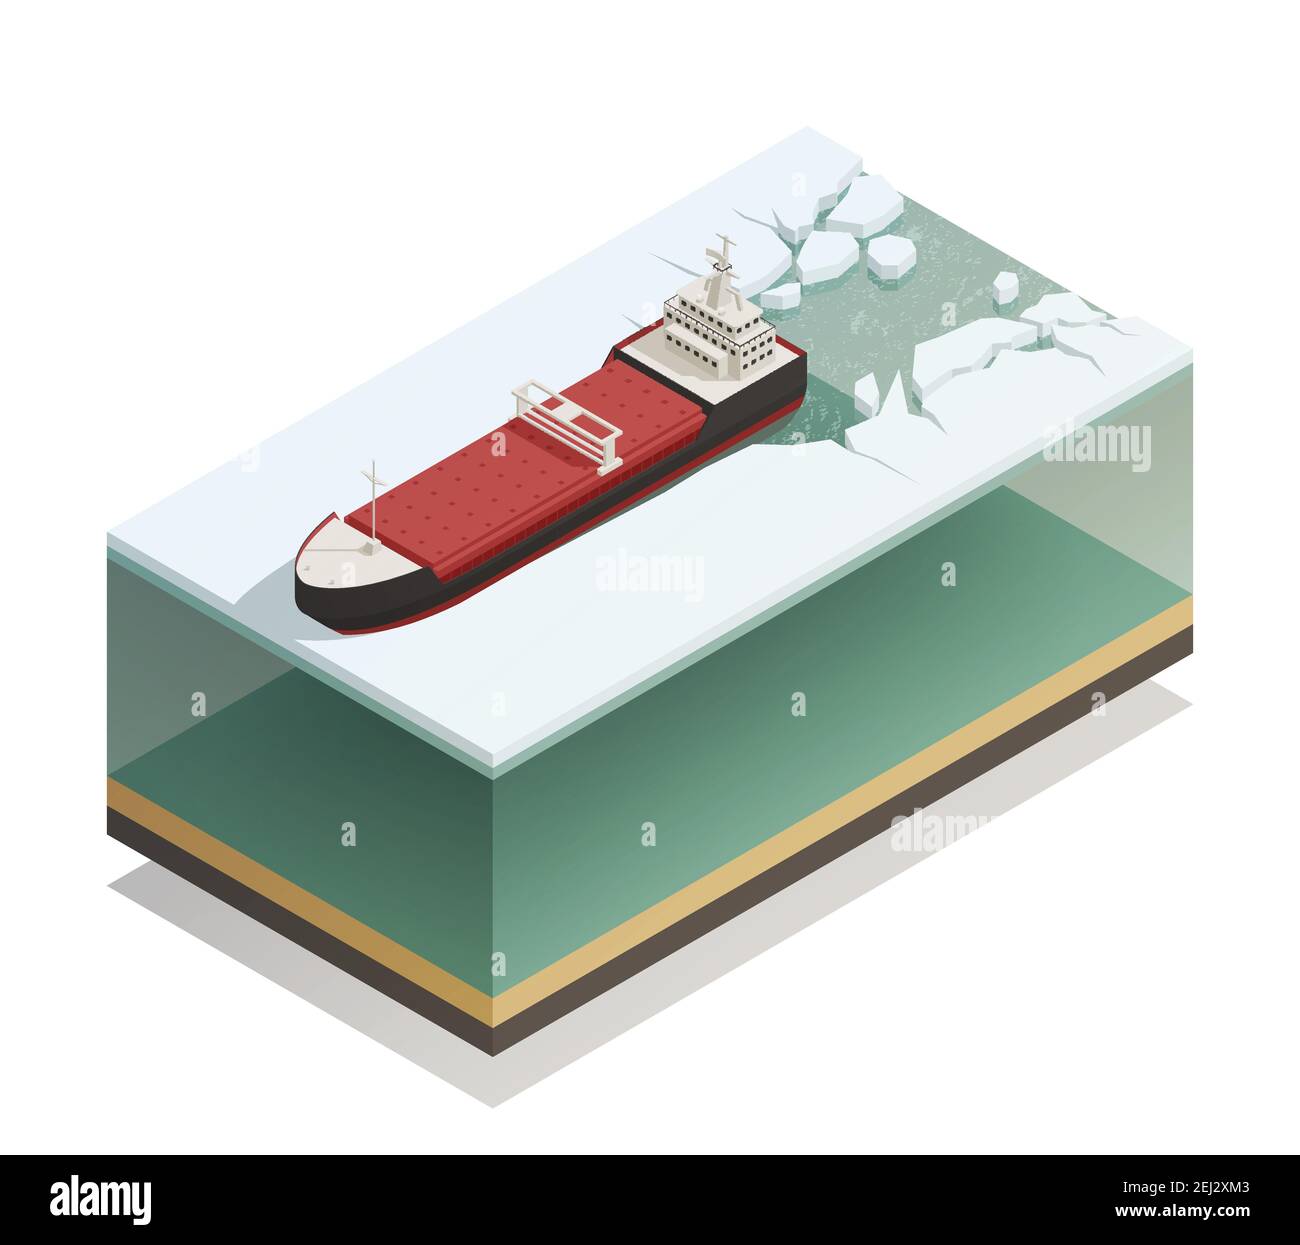 Eisbrecher Schiff über Wasser brechen Eis mit dicken Wasserschicht darunter Vektor-Illustration der isometrischen Modellzusammensetzung des Gefäßes Stock Vektor